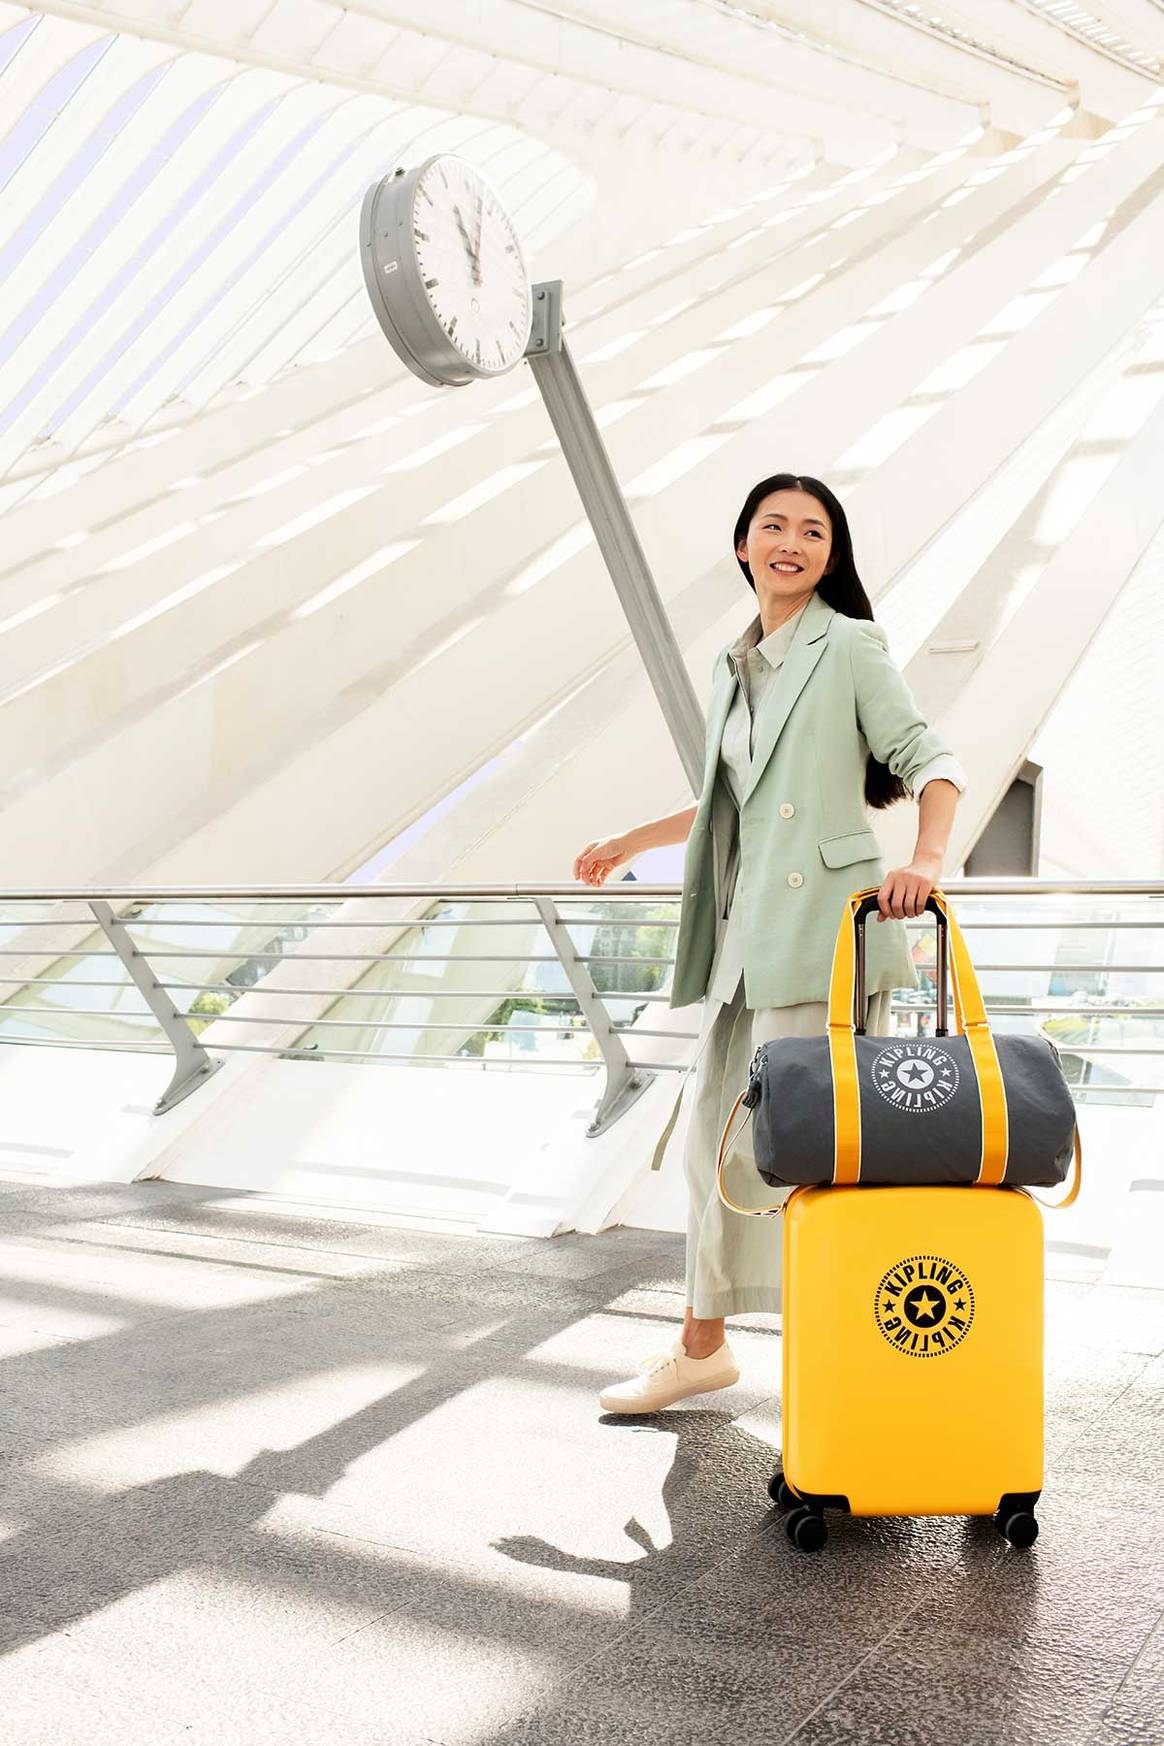 Kipling to debut hard-case luggage